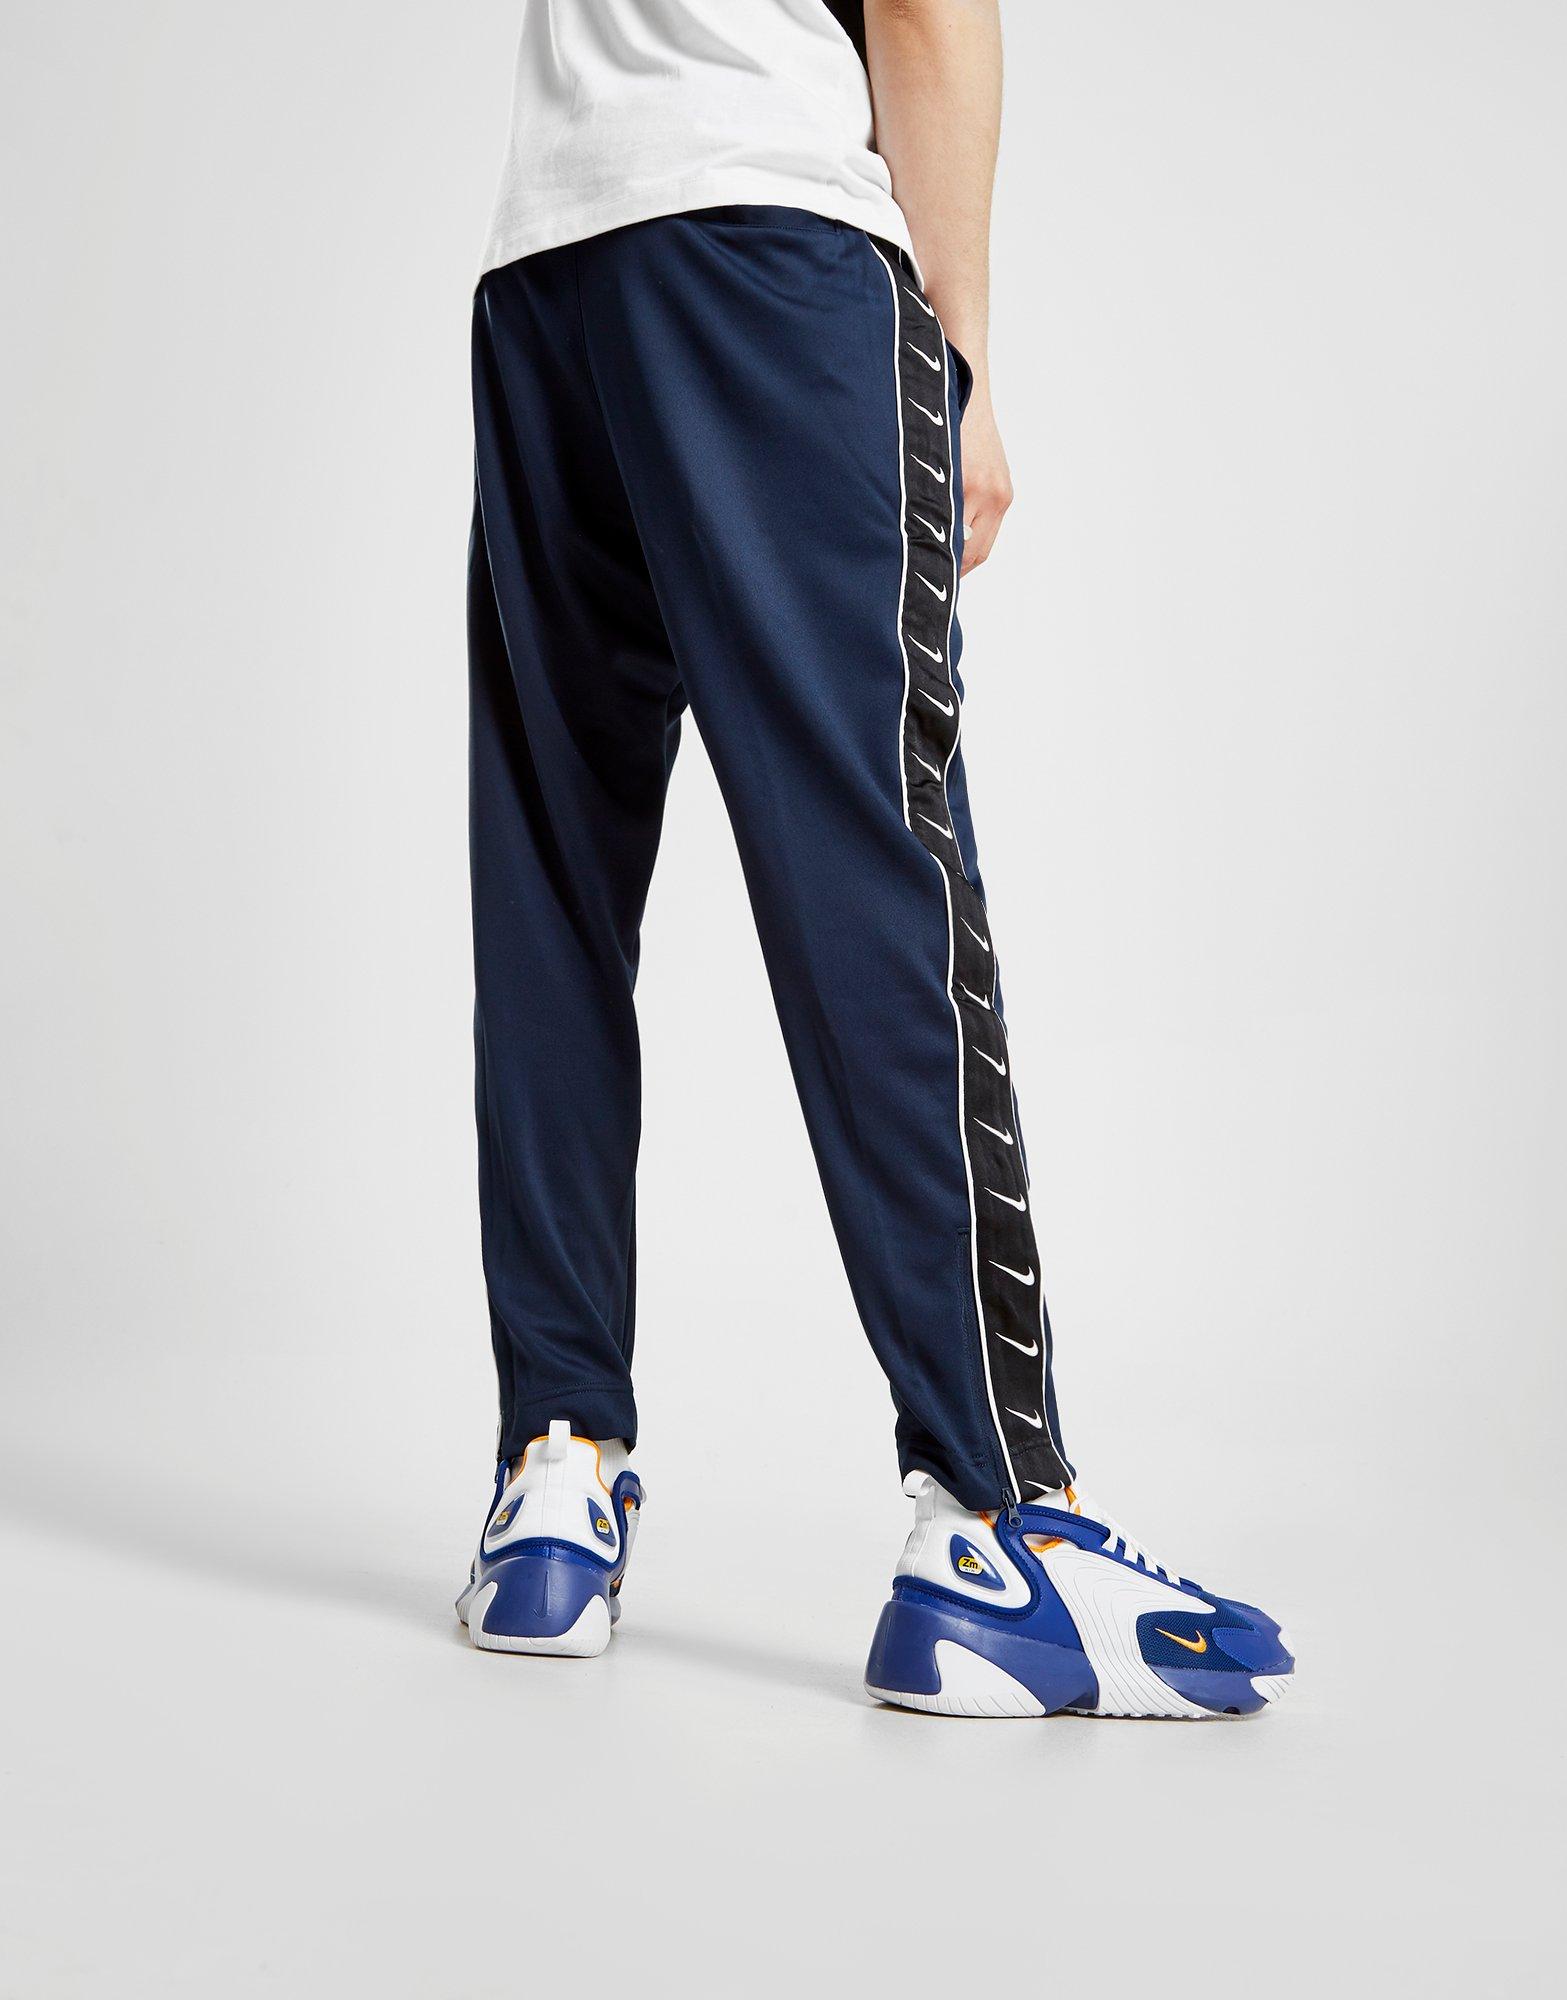 Nike track. Nike track Pants 2000s. Nike TN track Pants синие. Nike Taped Pants Black. Nike Side Tape Joggers.